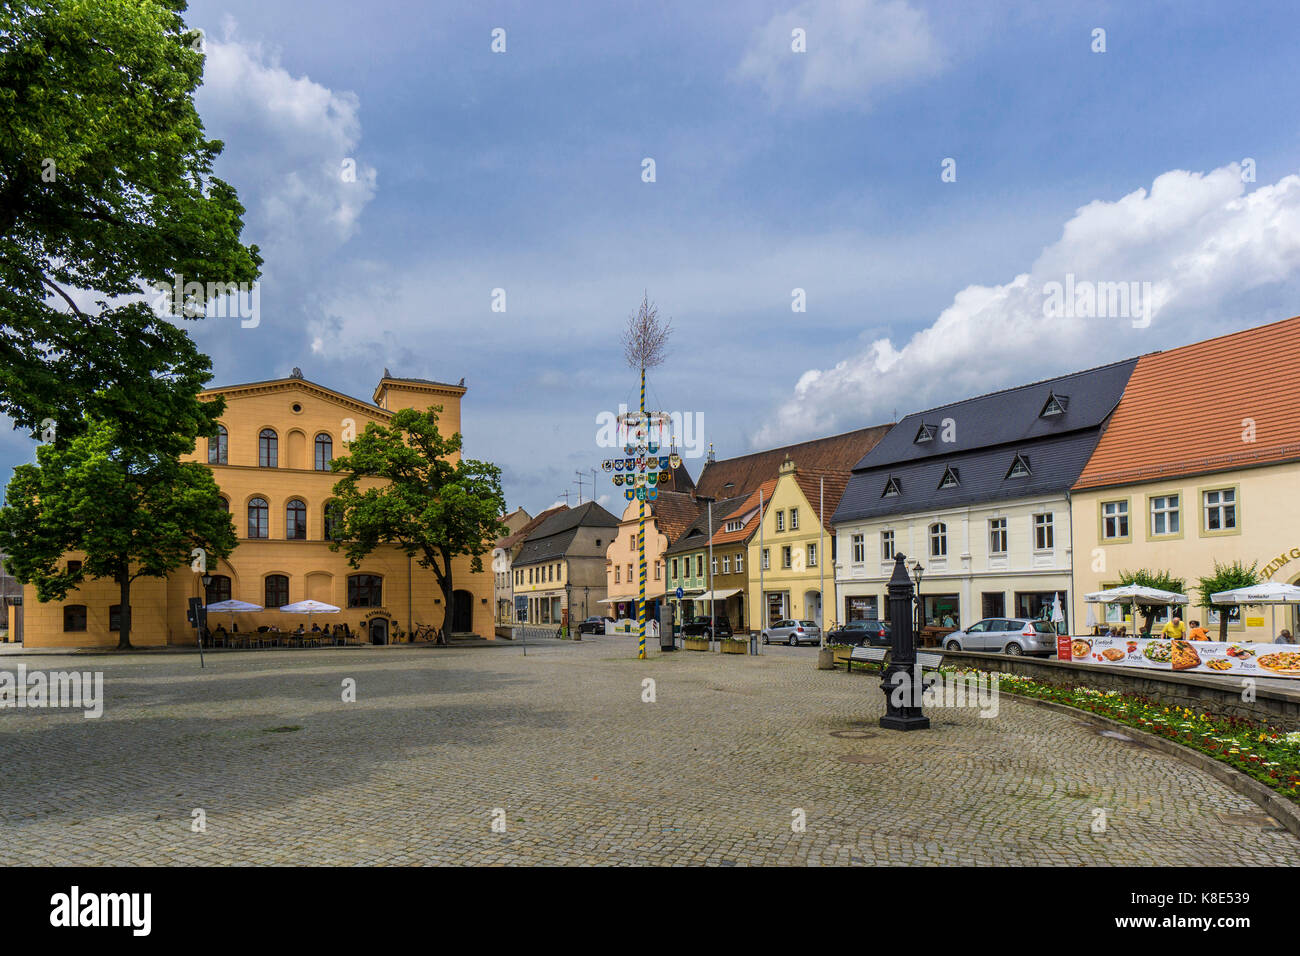 Luckau, il mercato, il municipio e case di città, Marktplatz, rathaus und bürgerhaeuser Foto Stock